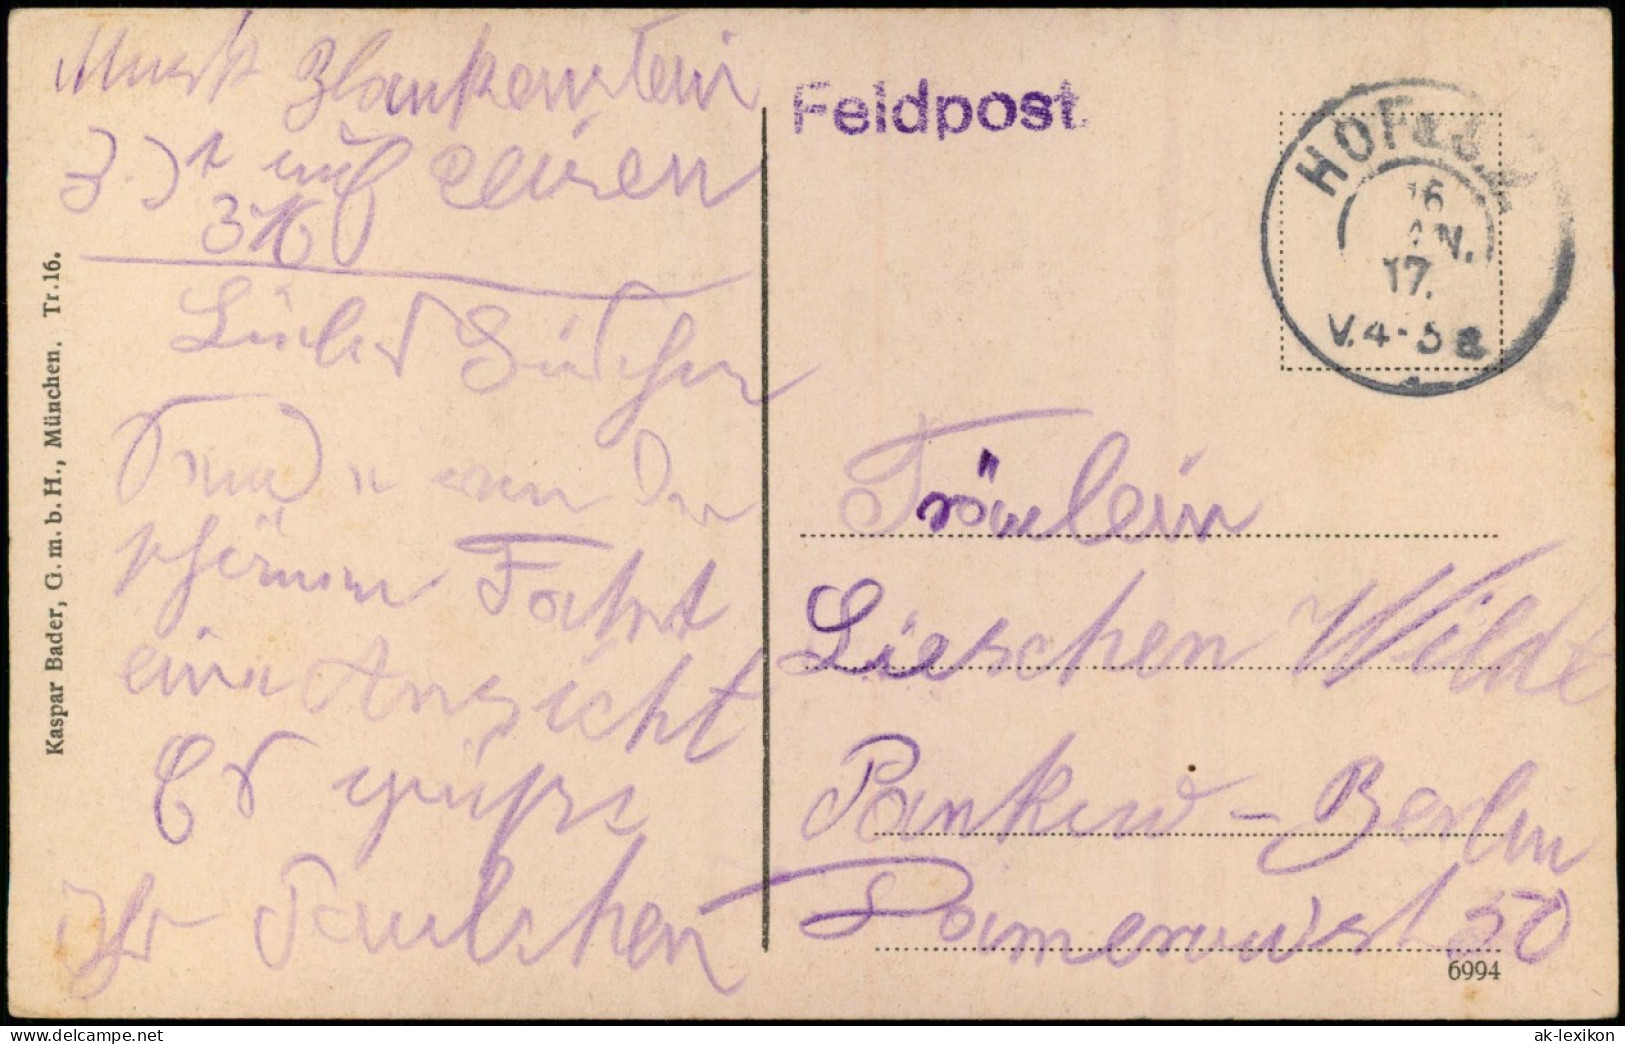 Ansichtskarte Hof (Saale) Wörthstrasse 1917 - Hof